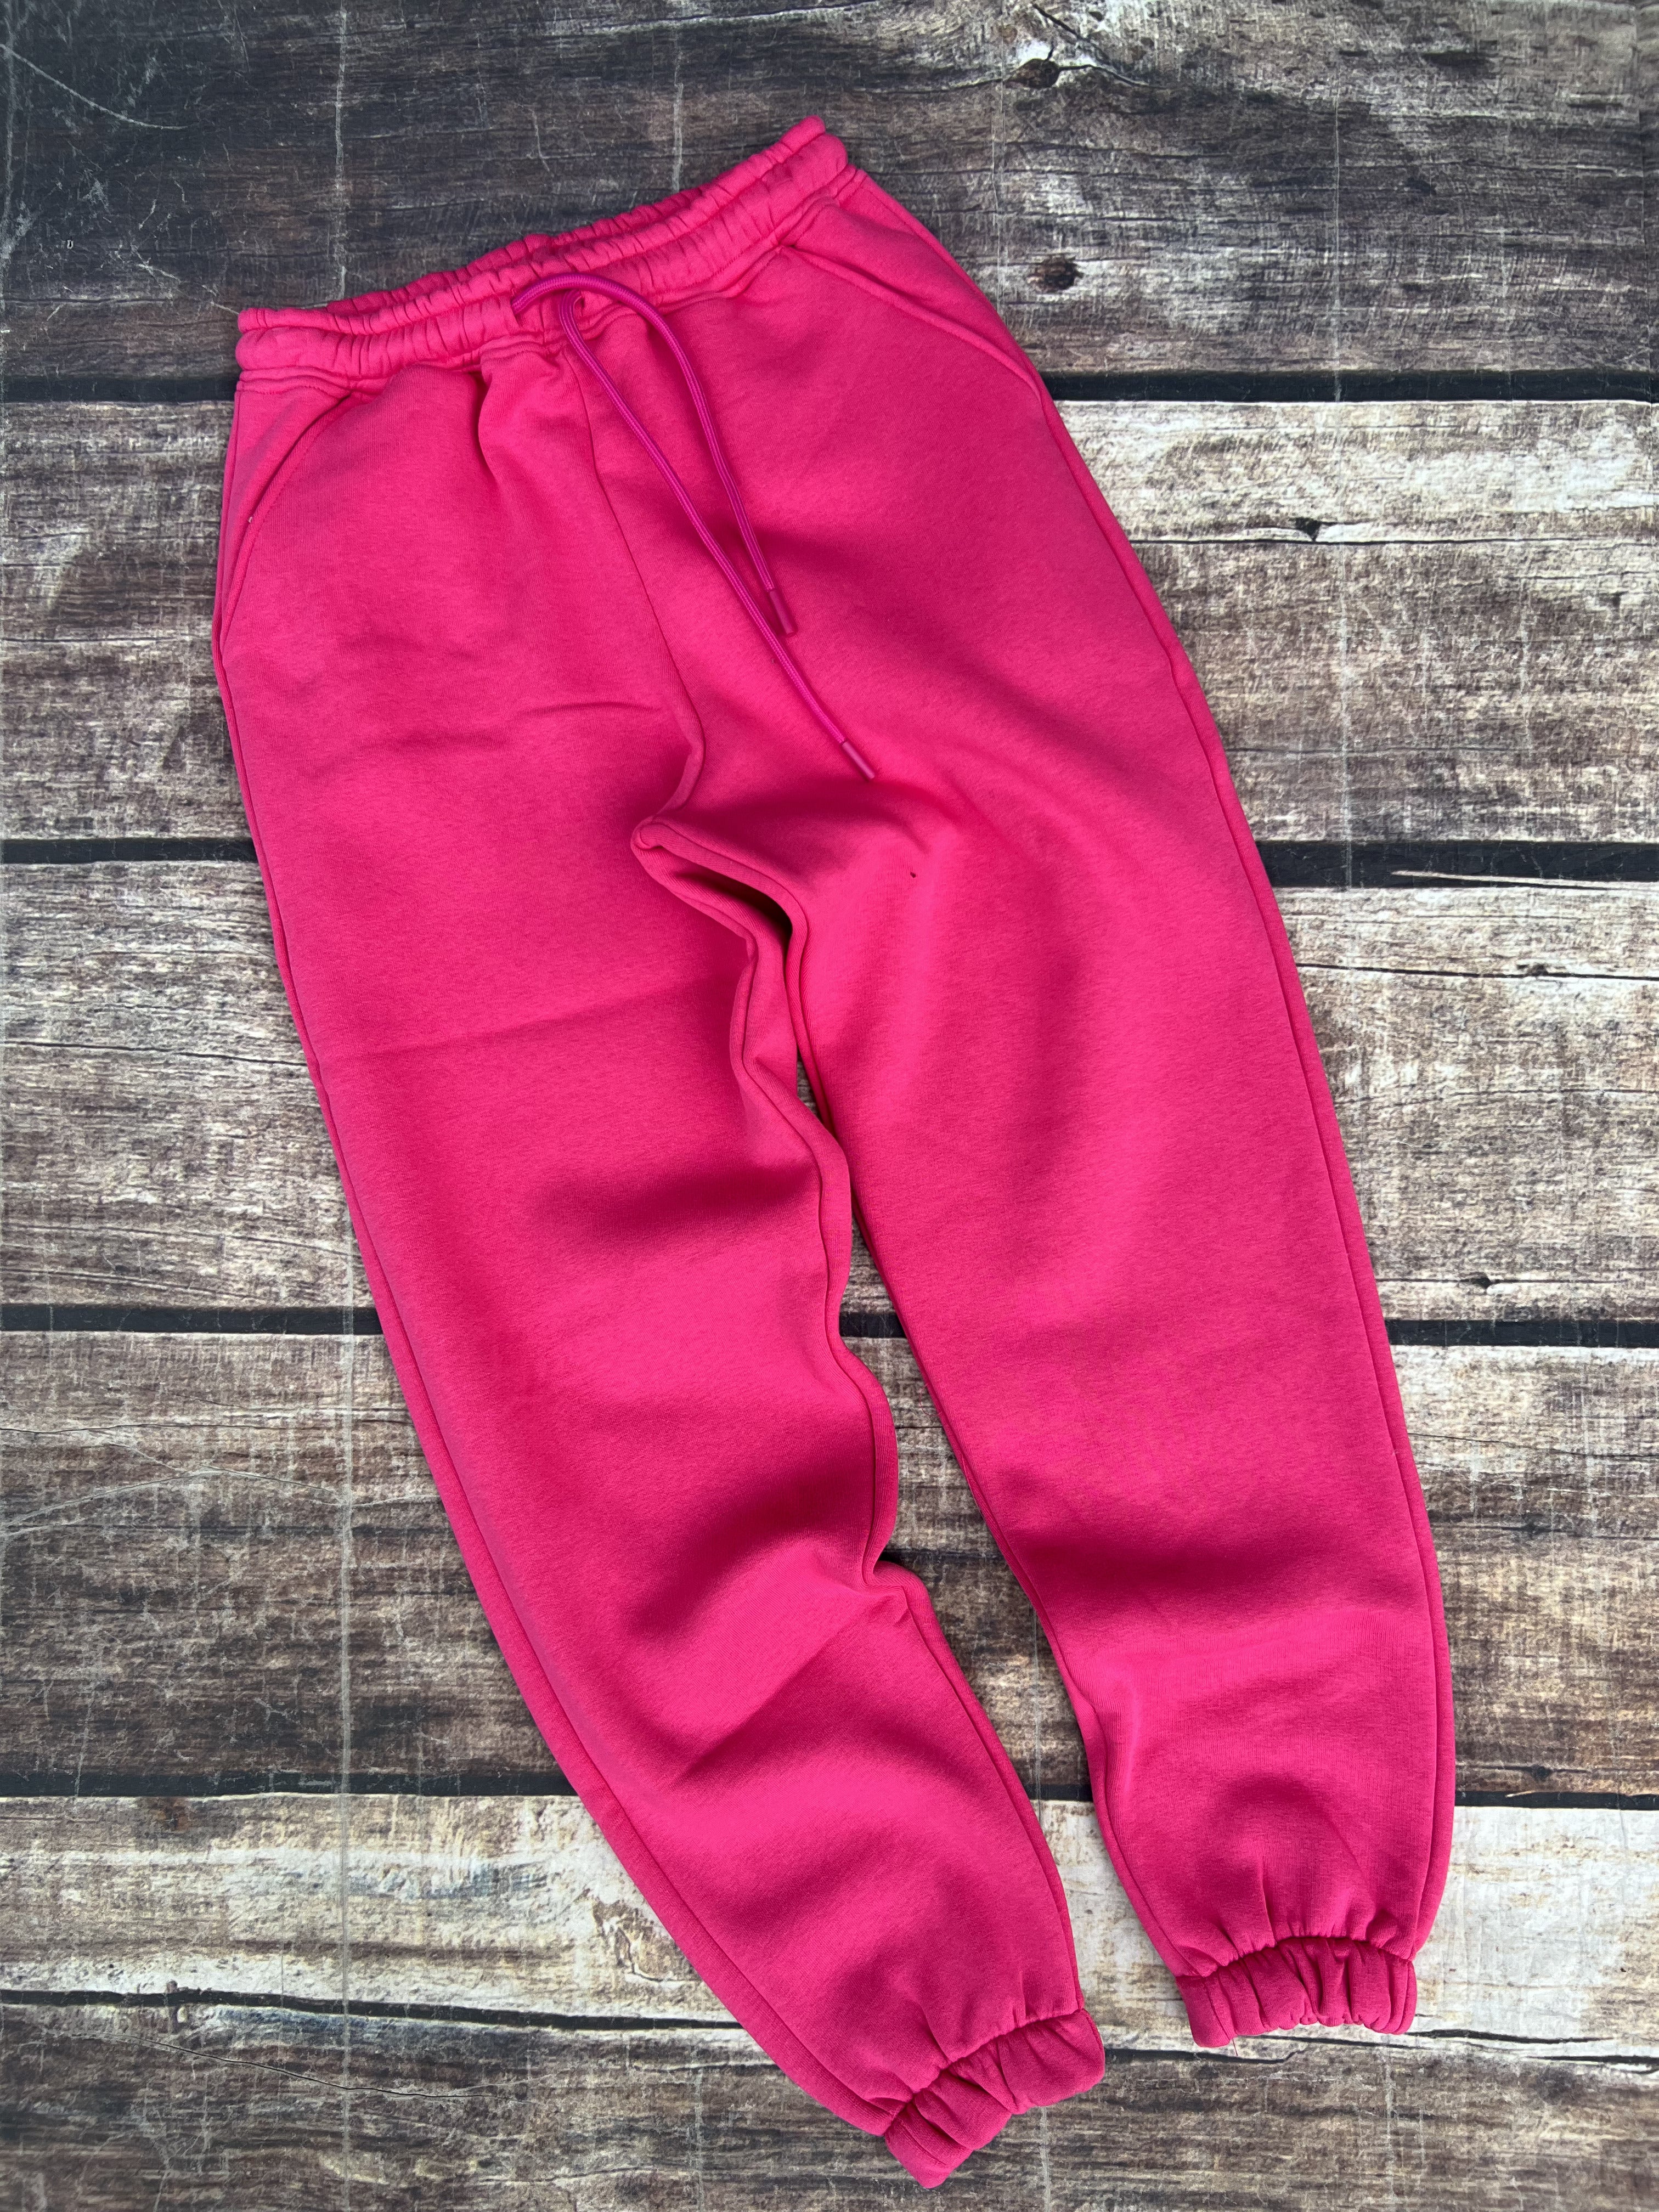 Pantalone Superculture Felpa Fucsia Donna (8528319578452)